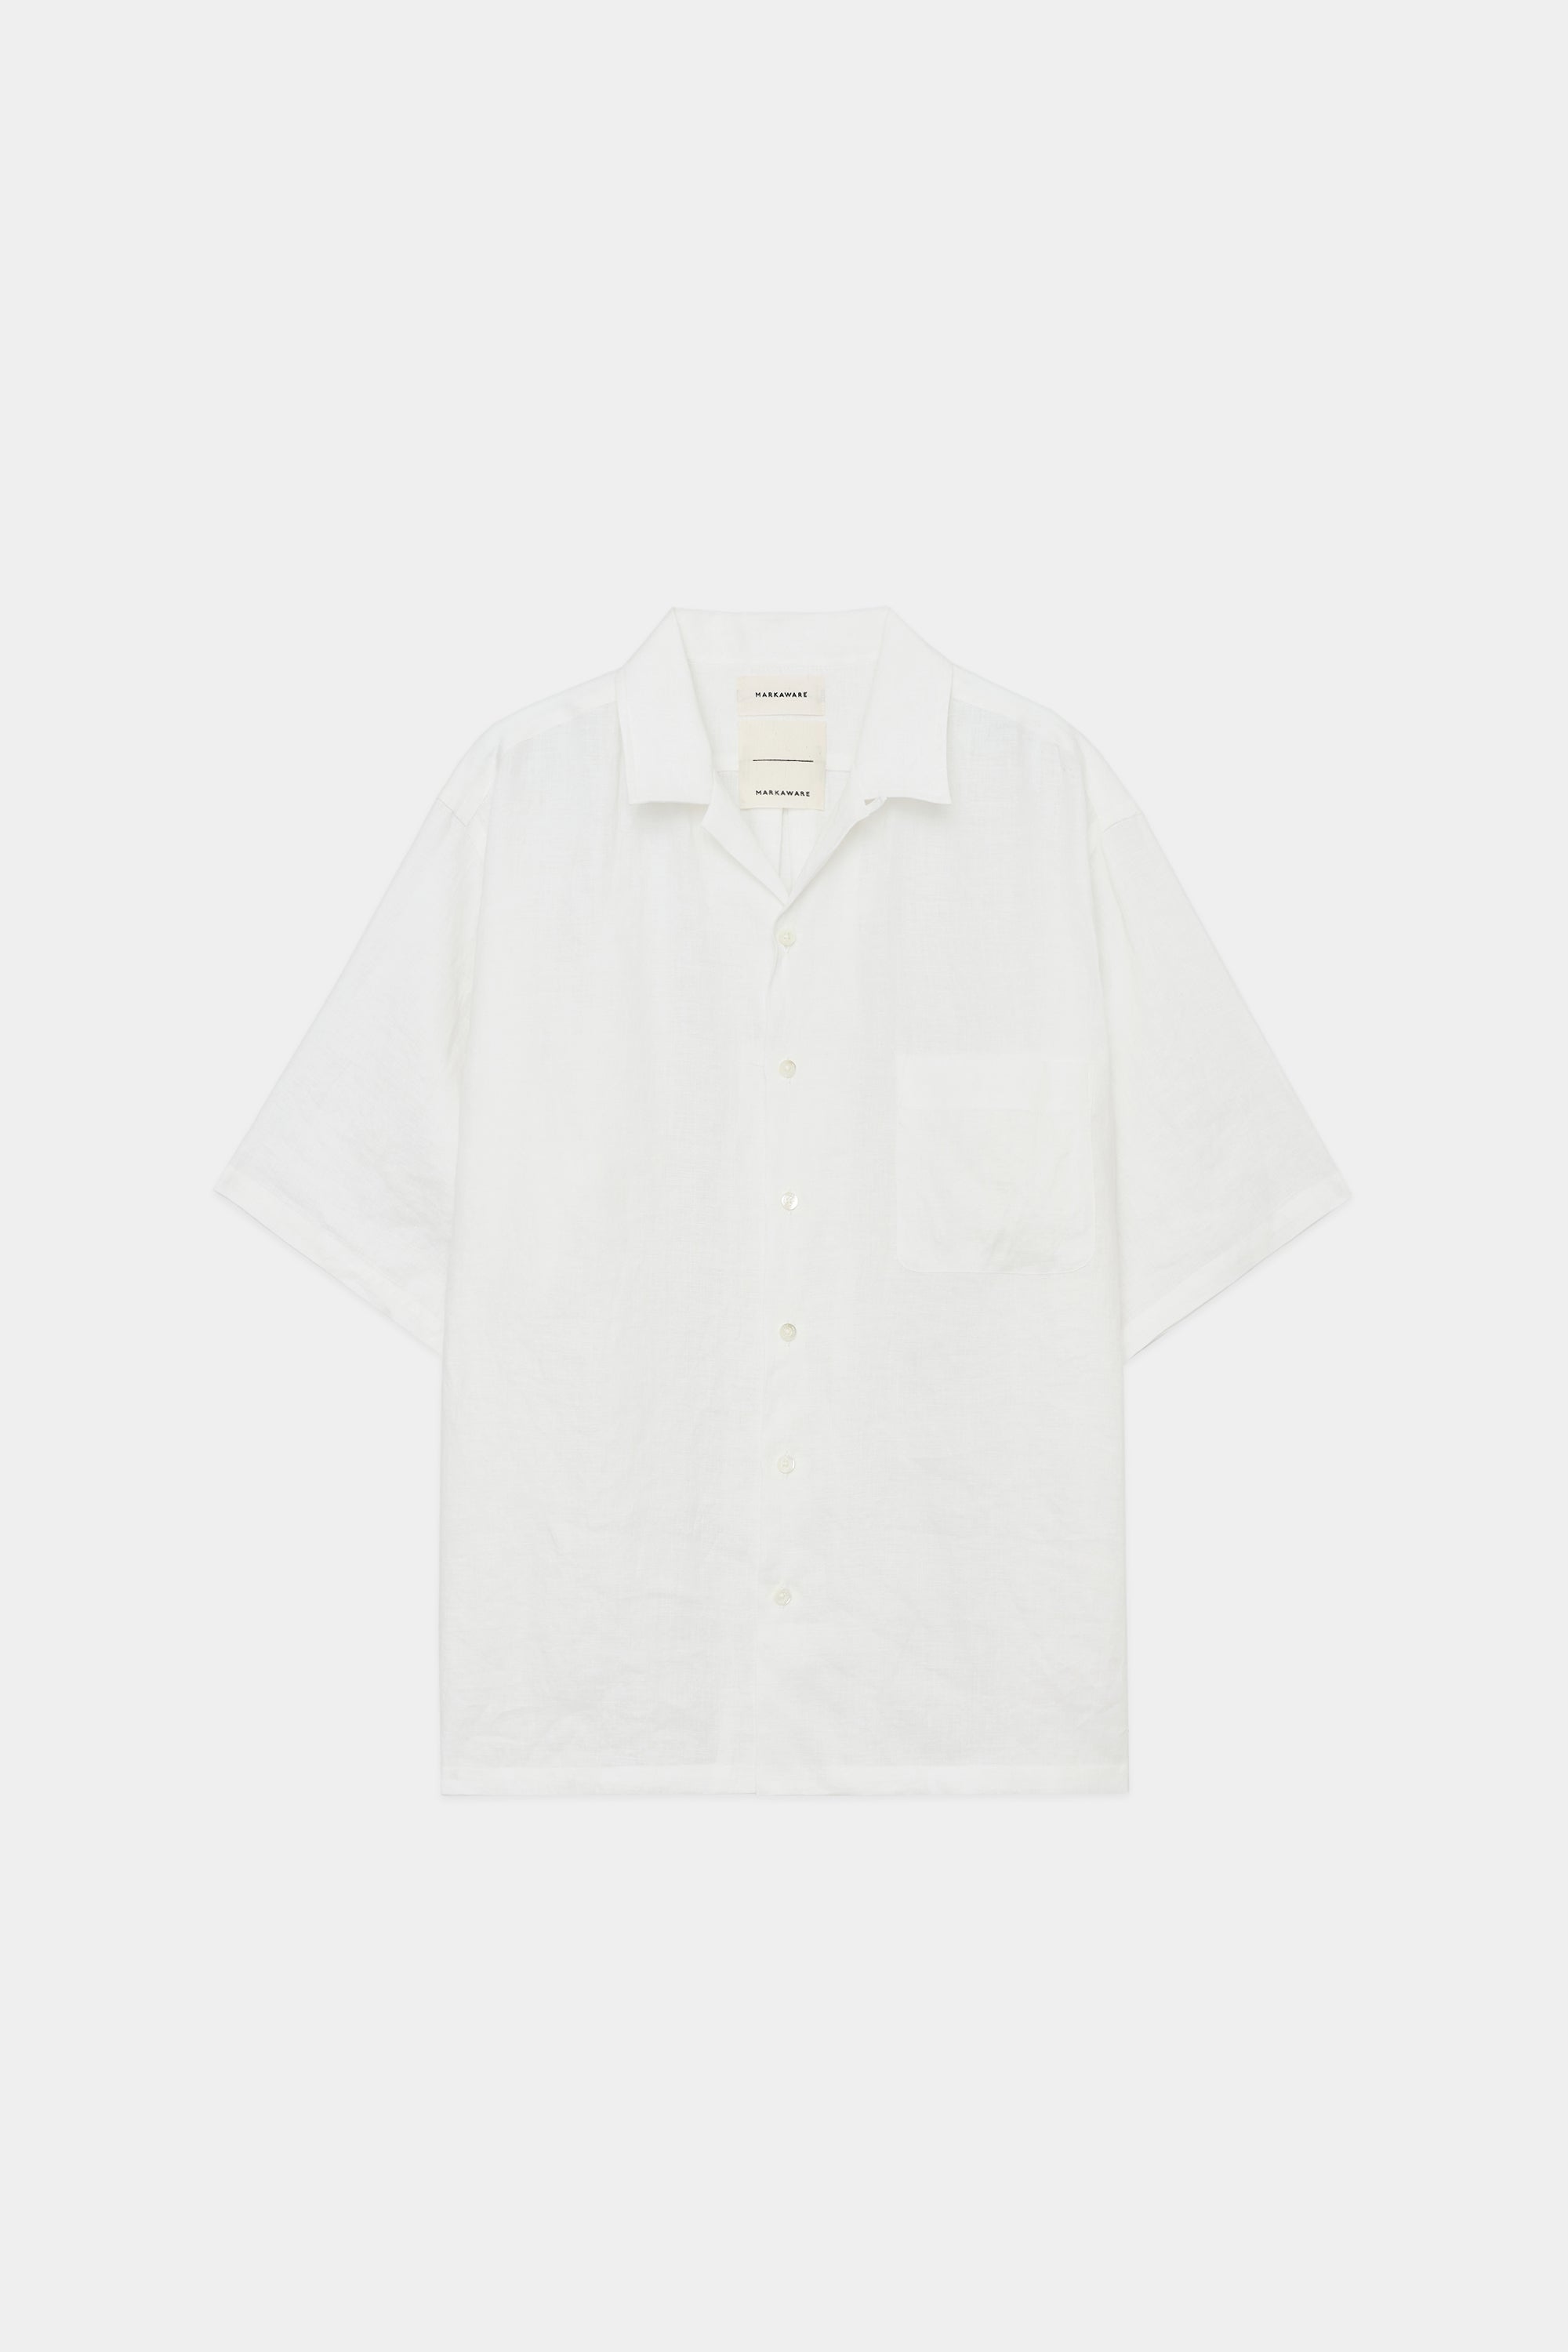 ヘンプ細布 / オープンカラーシャツ S/S, White